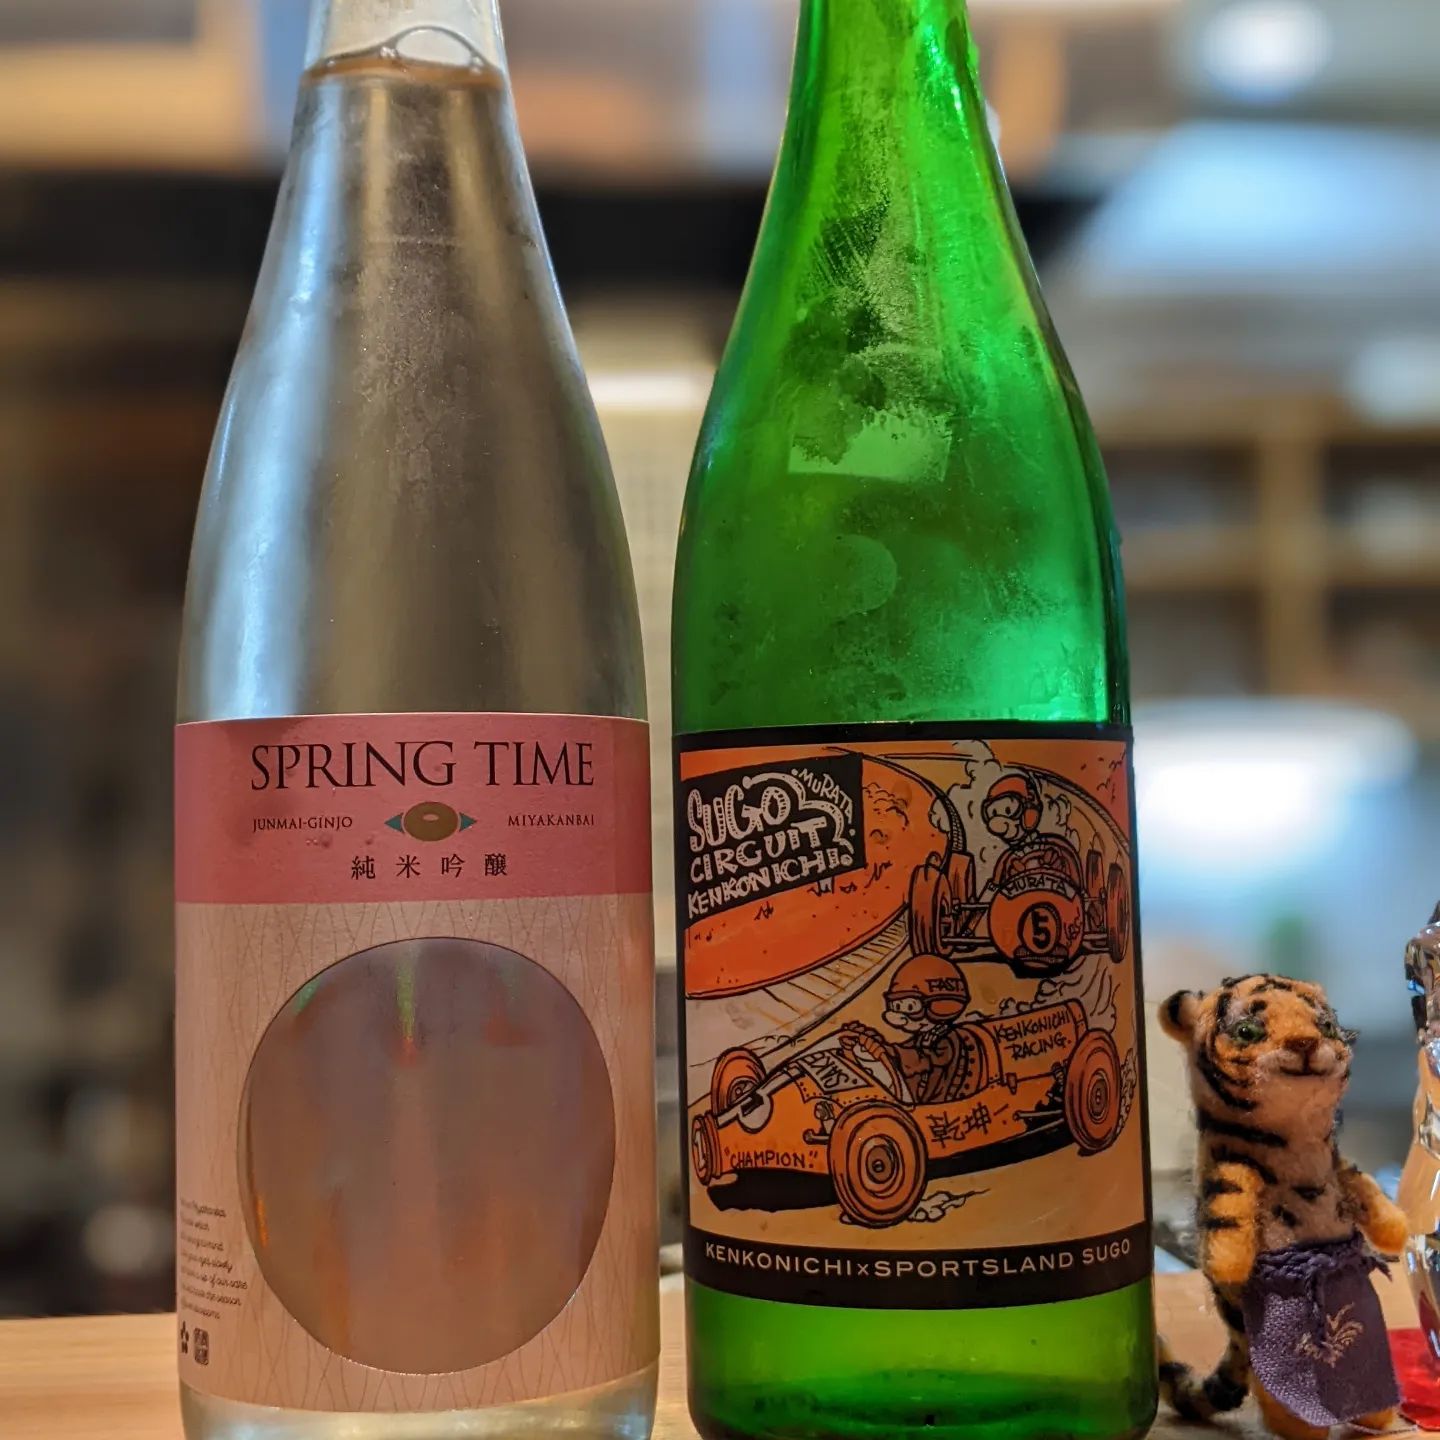 SUGOラベルの乾坤一と宮寒梅の春のお酒。エチケットだけでなく美味しいお酒ばかりです🥰 (Instagram)